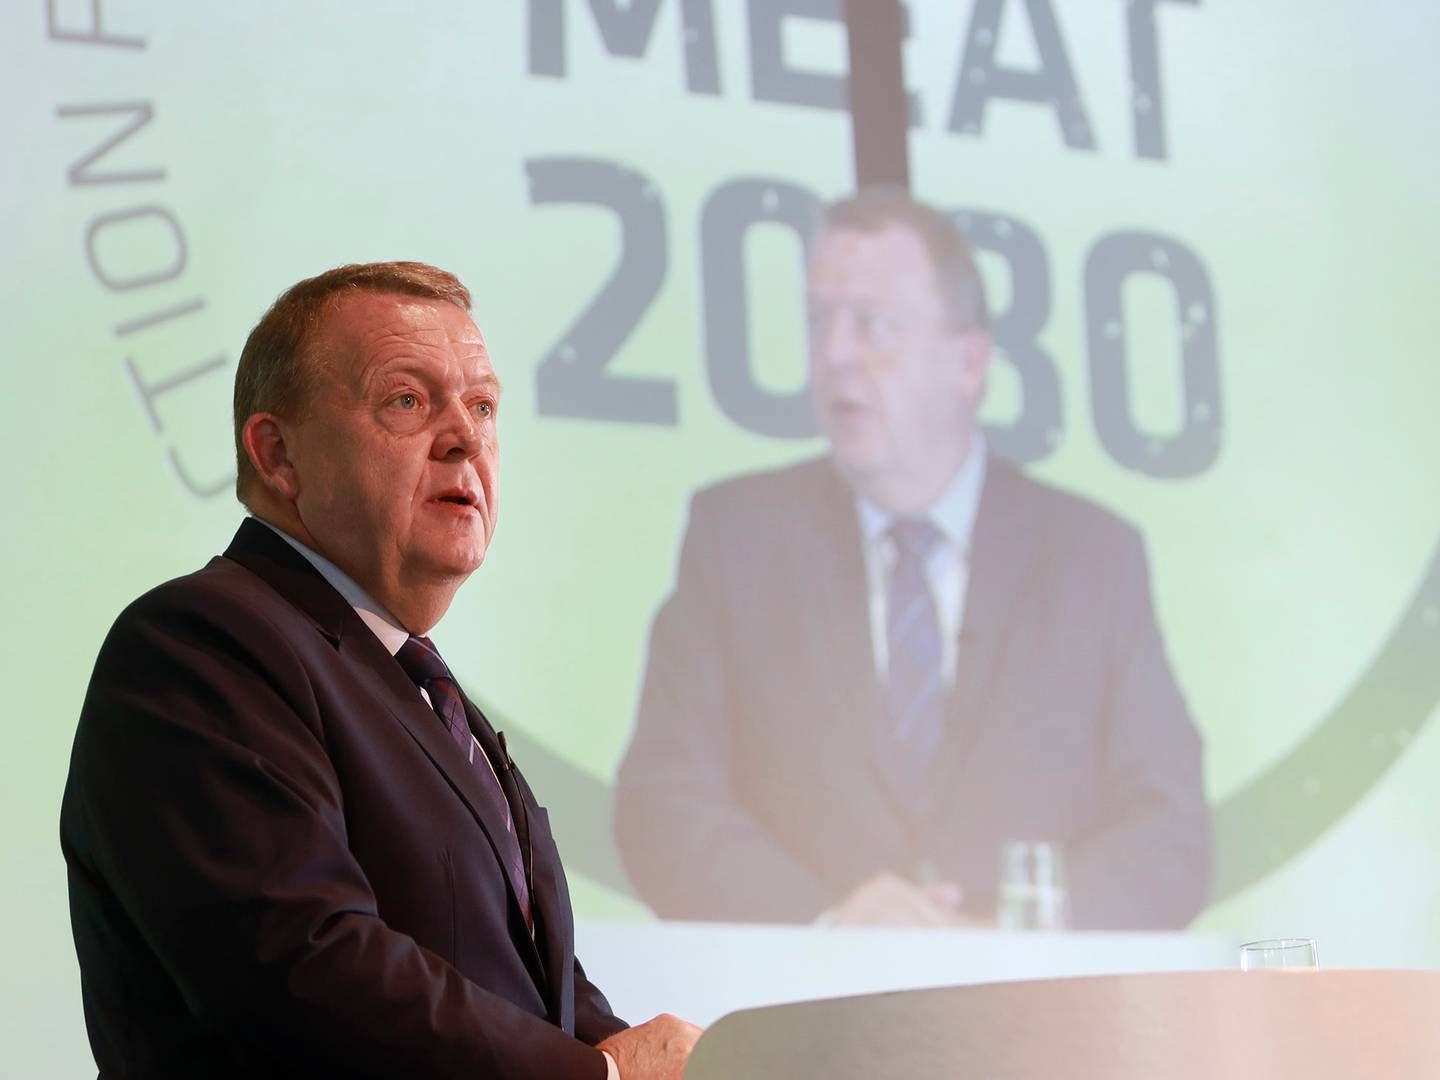 Statsminister Lars Løkke Rasmussen var mødt op for at holde den første tale på Danish Crowns bæredygtighedskonference "Meat 2030".